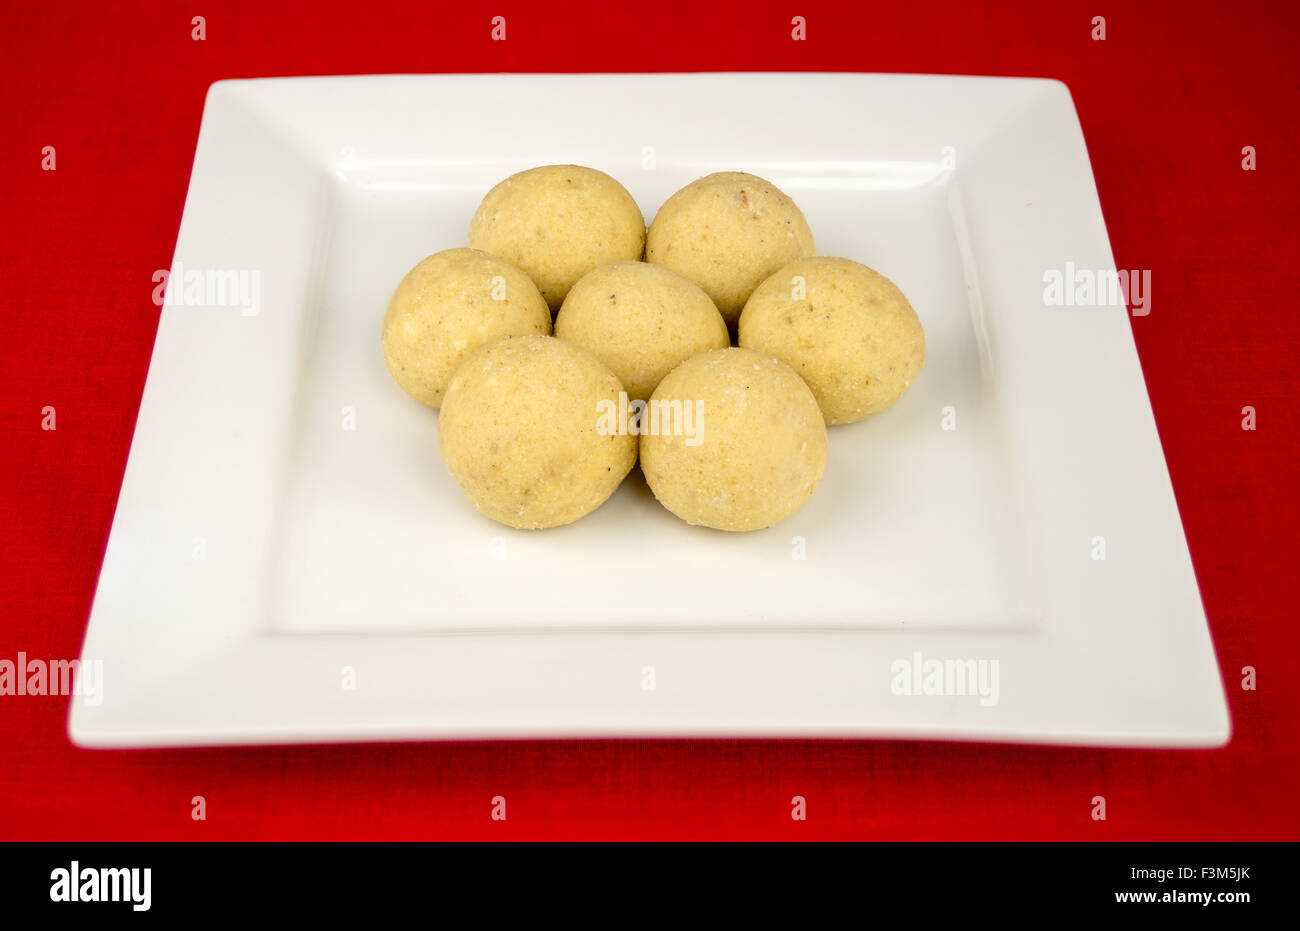 Kugel geformt indische Laddu (Laddoo) Dessert auf einer quadratischen keramische Platte gegen eine rote Tischdecke überzogen. Stockfoto